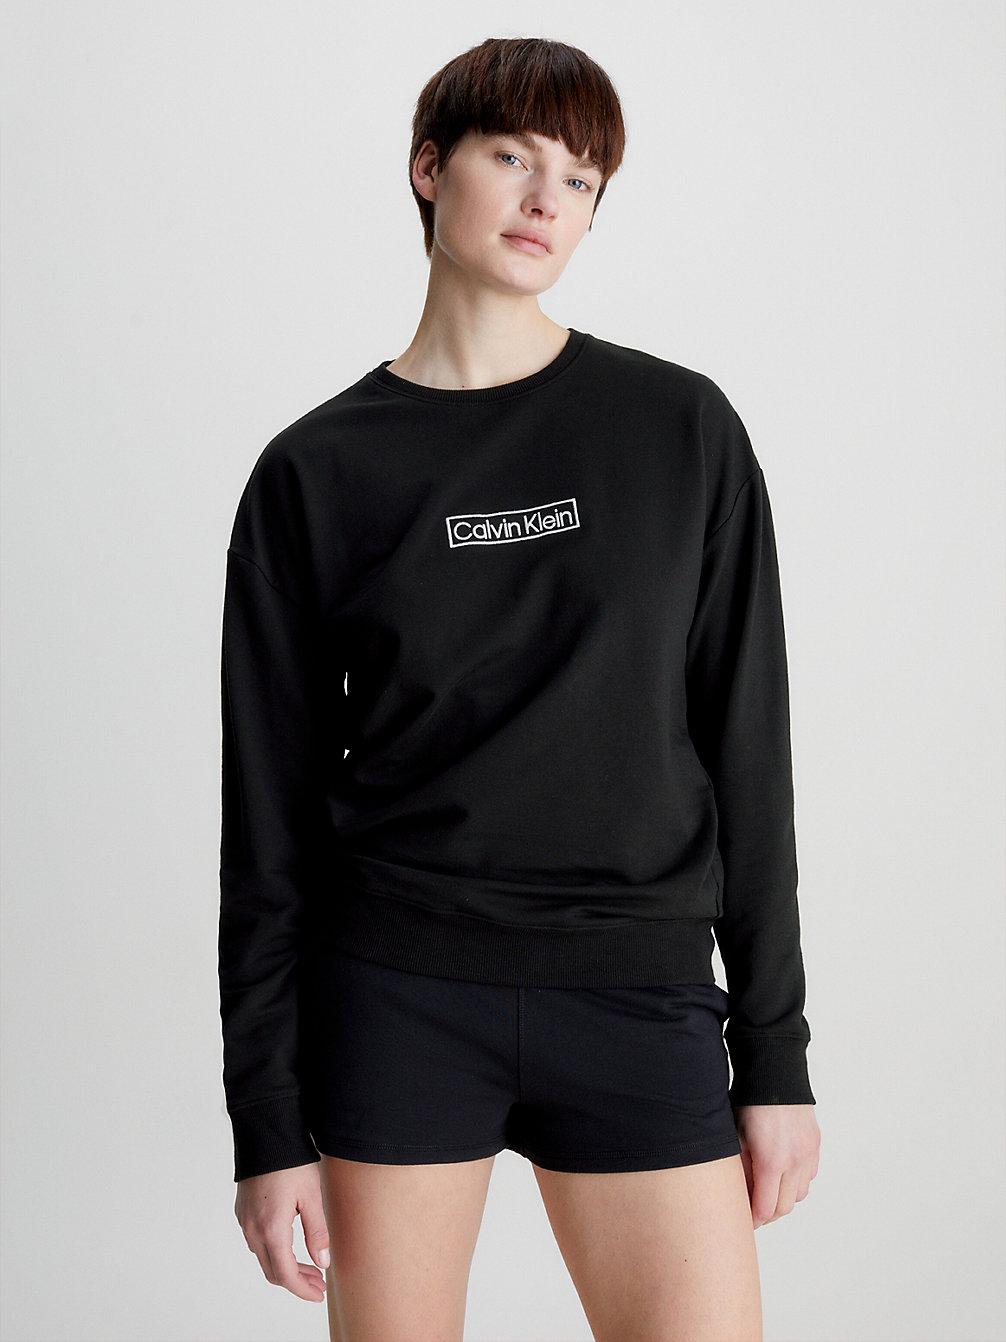 Loungesweatshirt - Reimagined Heritage > BLACK > undefined donna > Calvin Klein